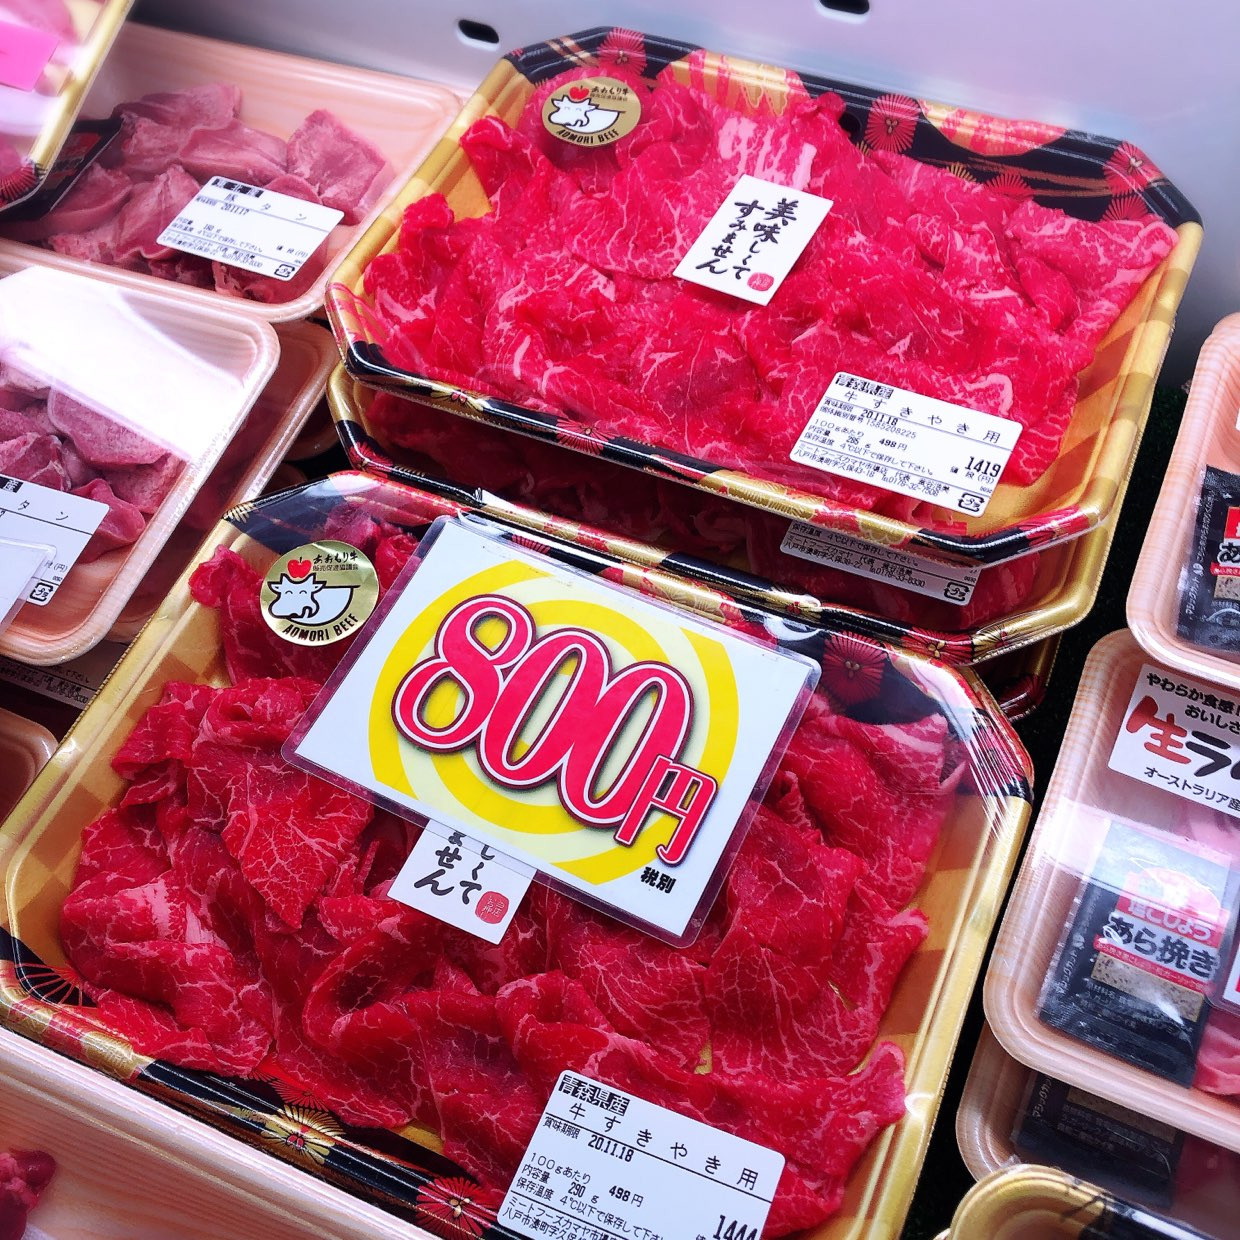 本日は青森県産牛すき焼き用がお買得です。